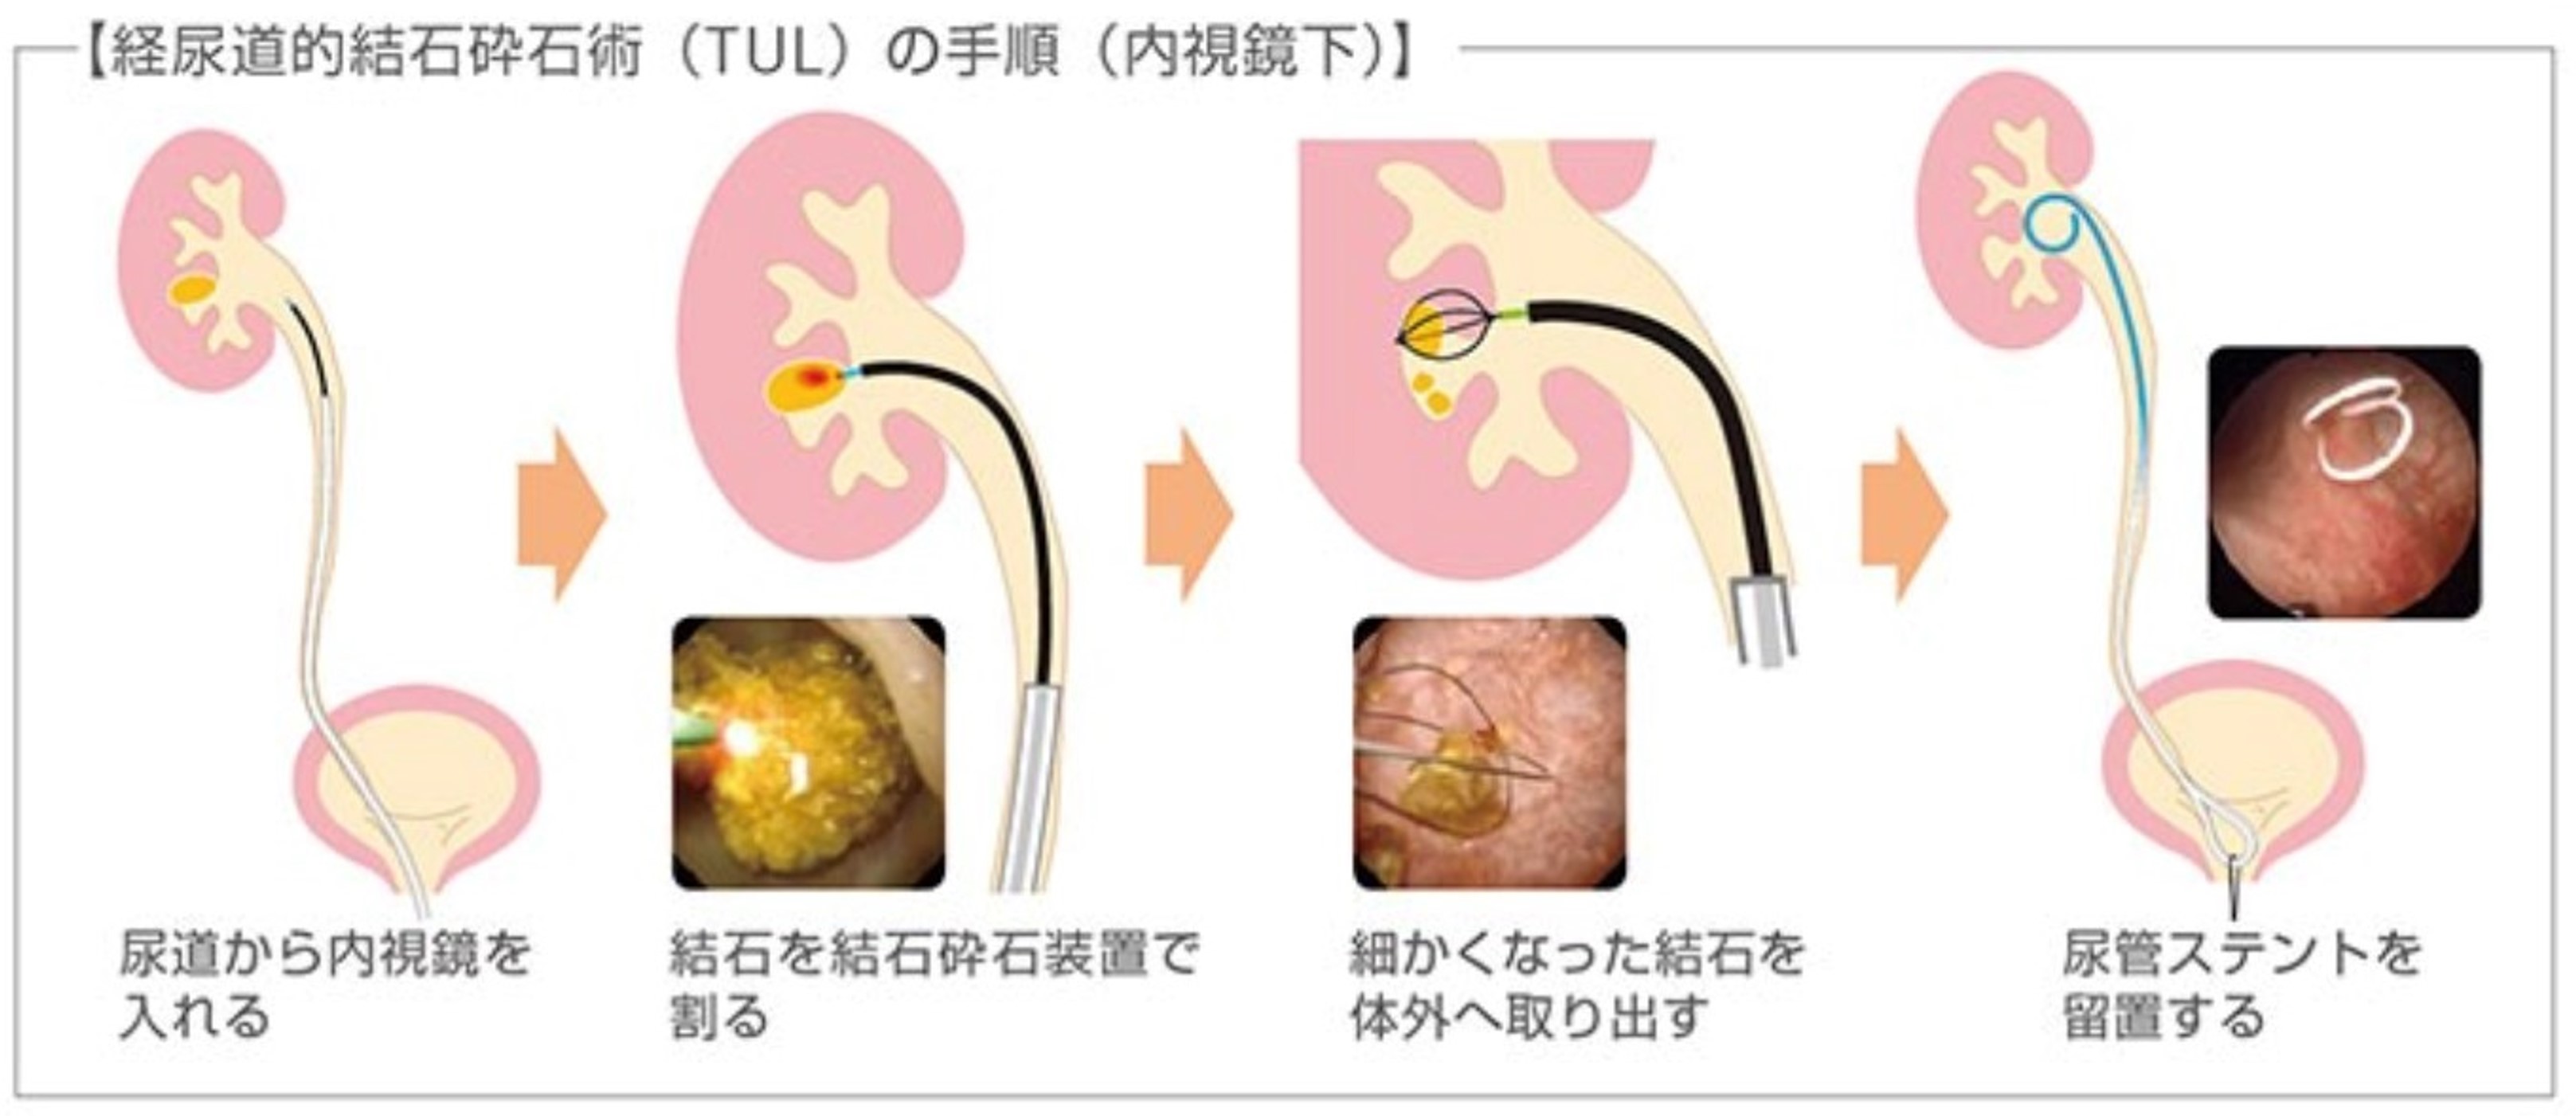 TUL（経尿道的腎尿管砕石術）